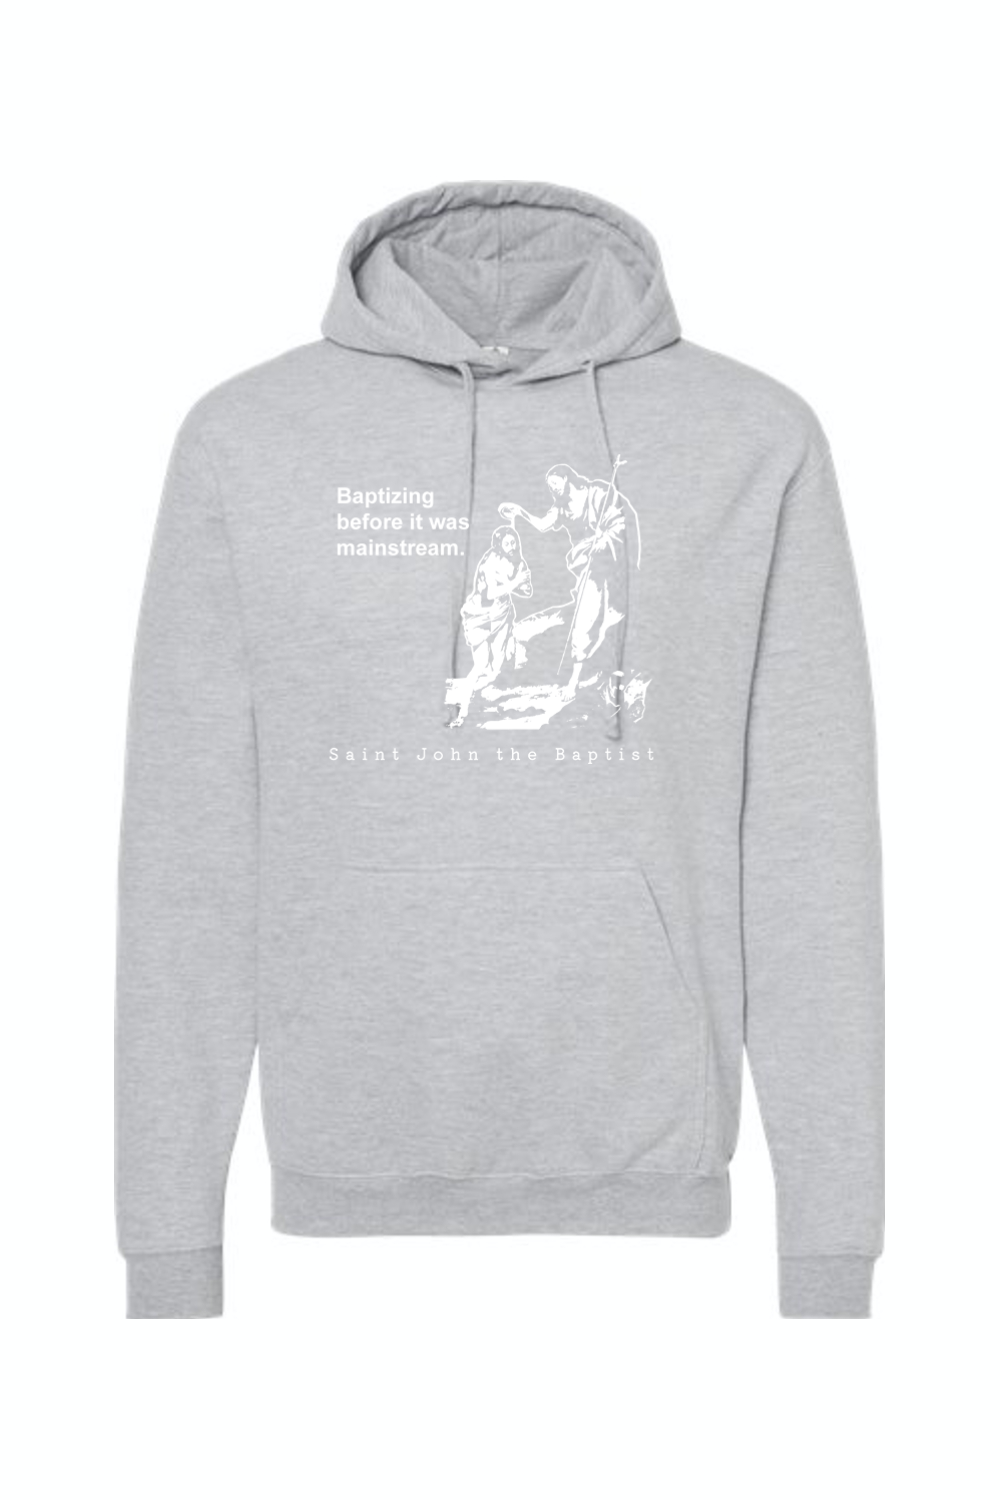 Mainstream - St. John the Baptist Hoodie Sweatshirt